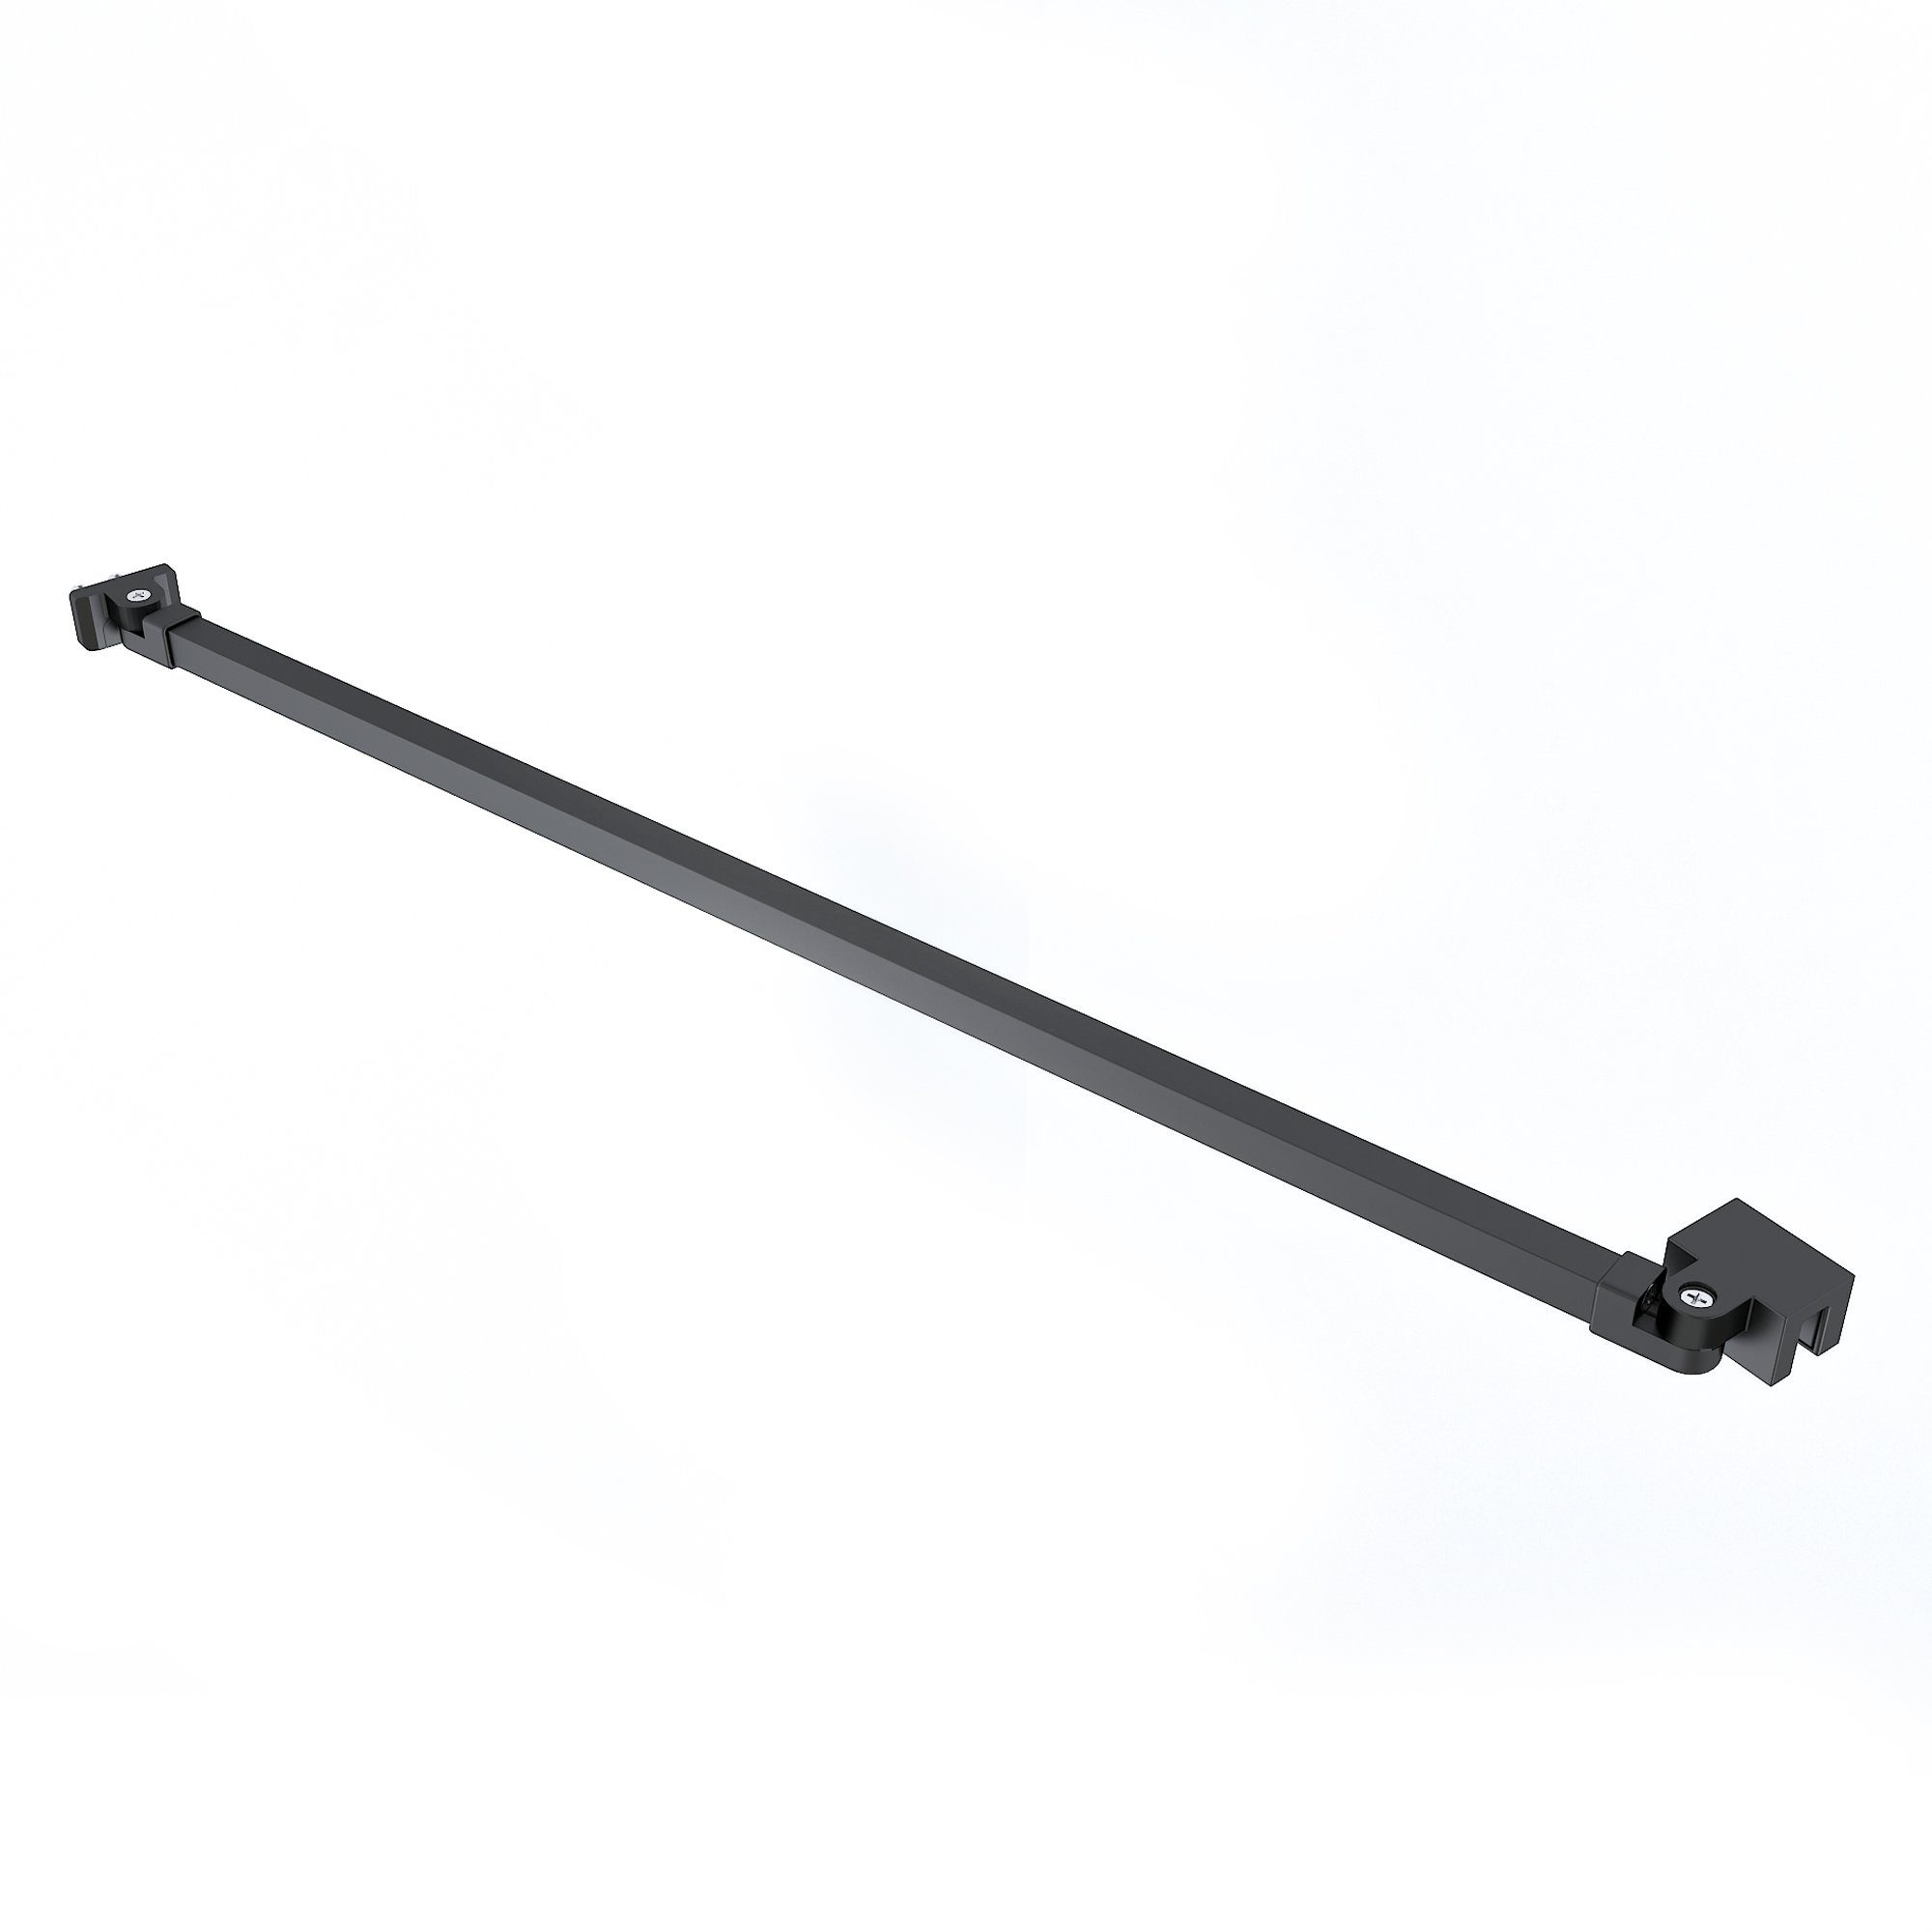 Boromal Duschwand-Stabilisationsstange Stabilisator für Schwarz 180°drehbar flexibel 4-8mm 48cm, Duschkabinen, Walk (Haltestange Duschwand Seitenwand), In für